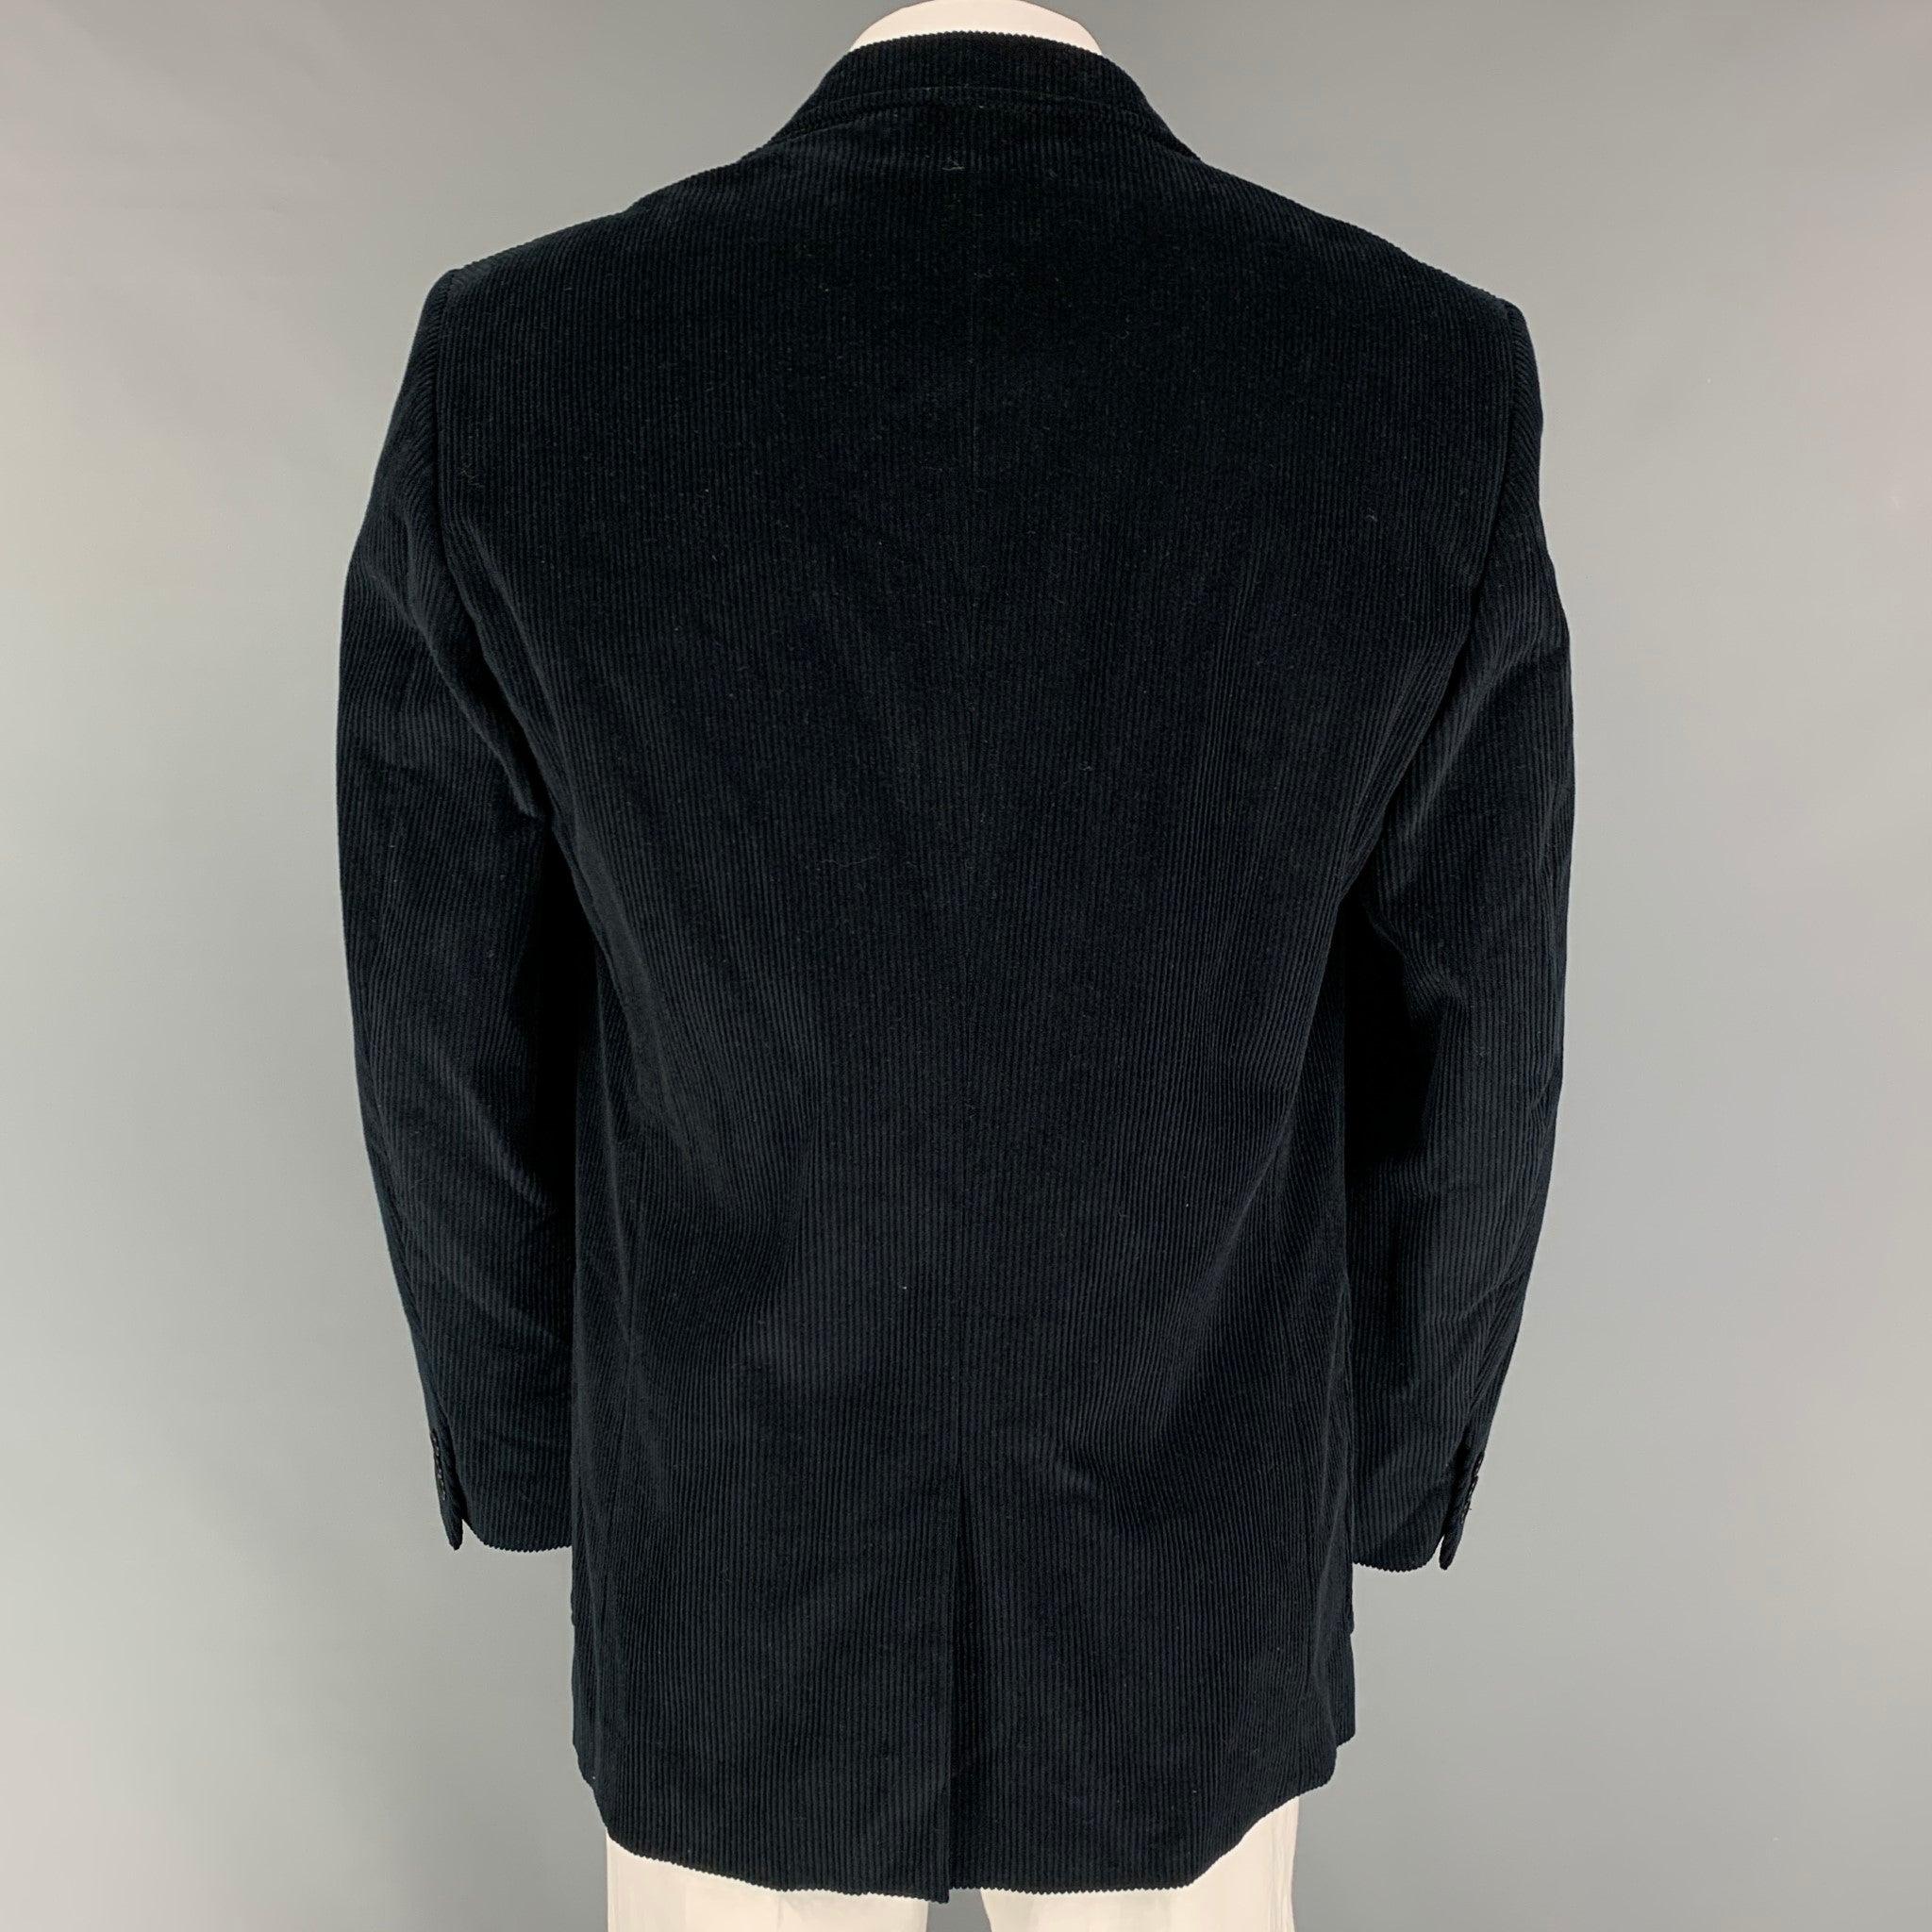 Men's CALVIN KLEIN COLLECTION Size 44 Black Corduroy Cotton Sport Coat For Sale